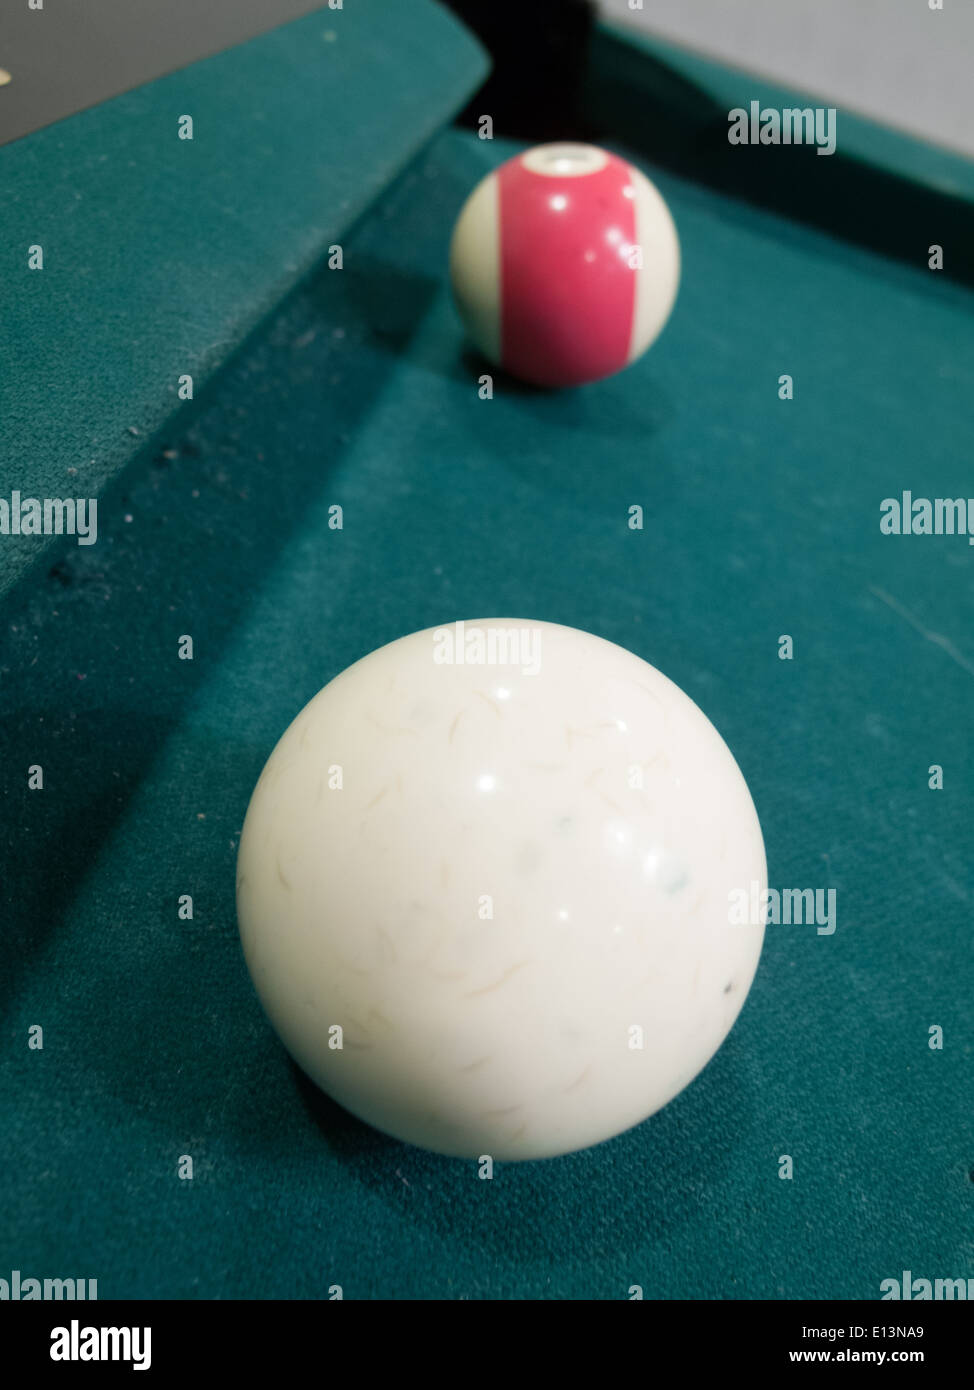 Cue ball pool con palla sul tavolo da biliardo Foto Stock